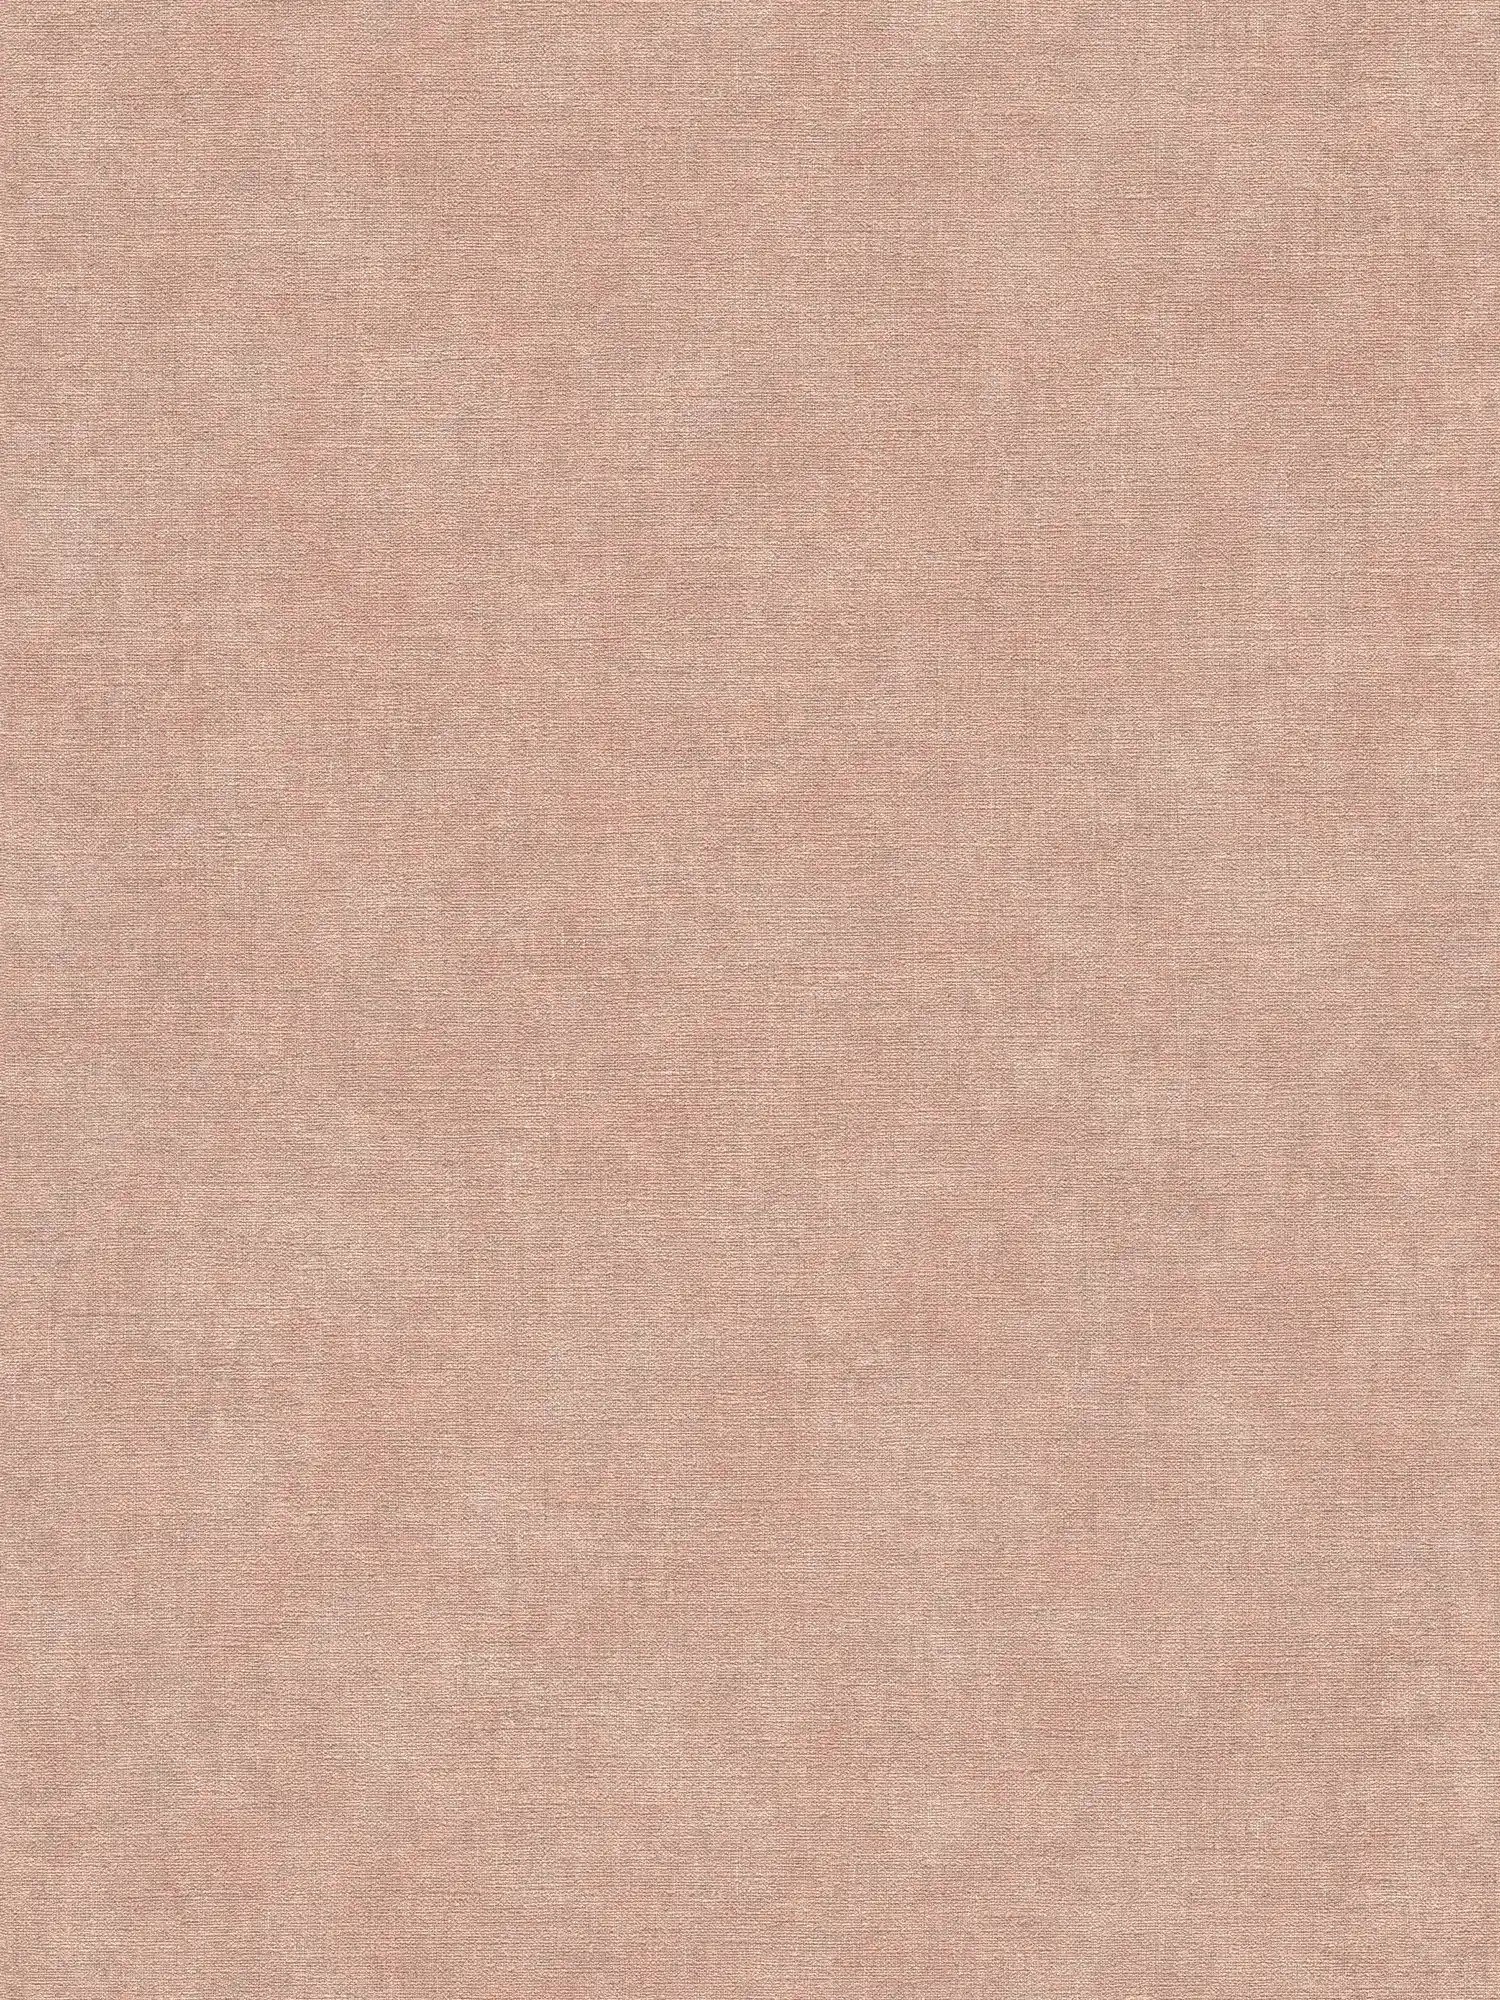 Effen vliesbehang in zachte gipslook - roze, grijs
